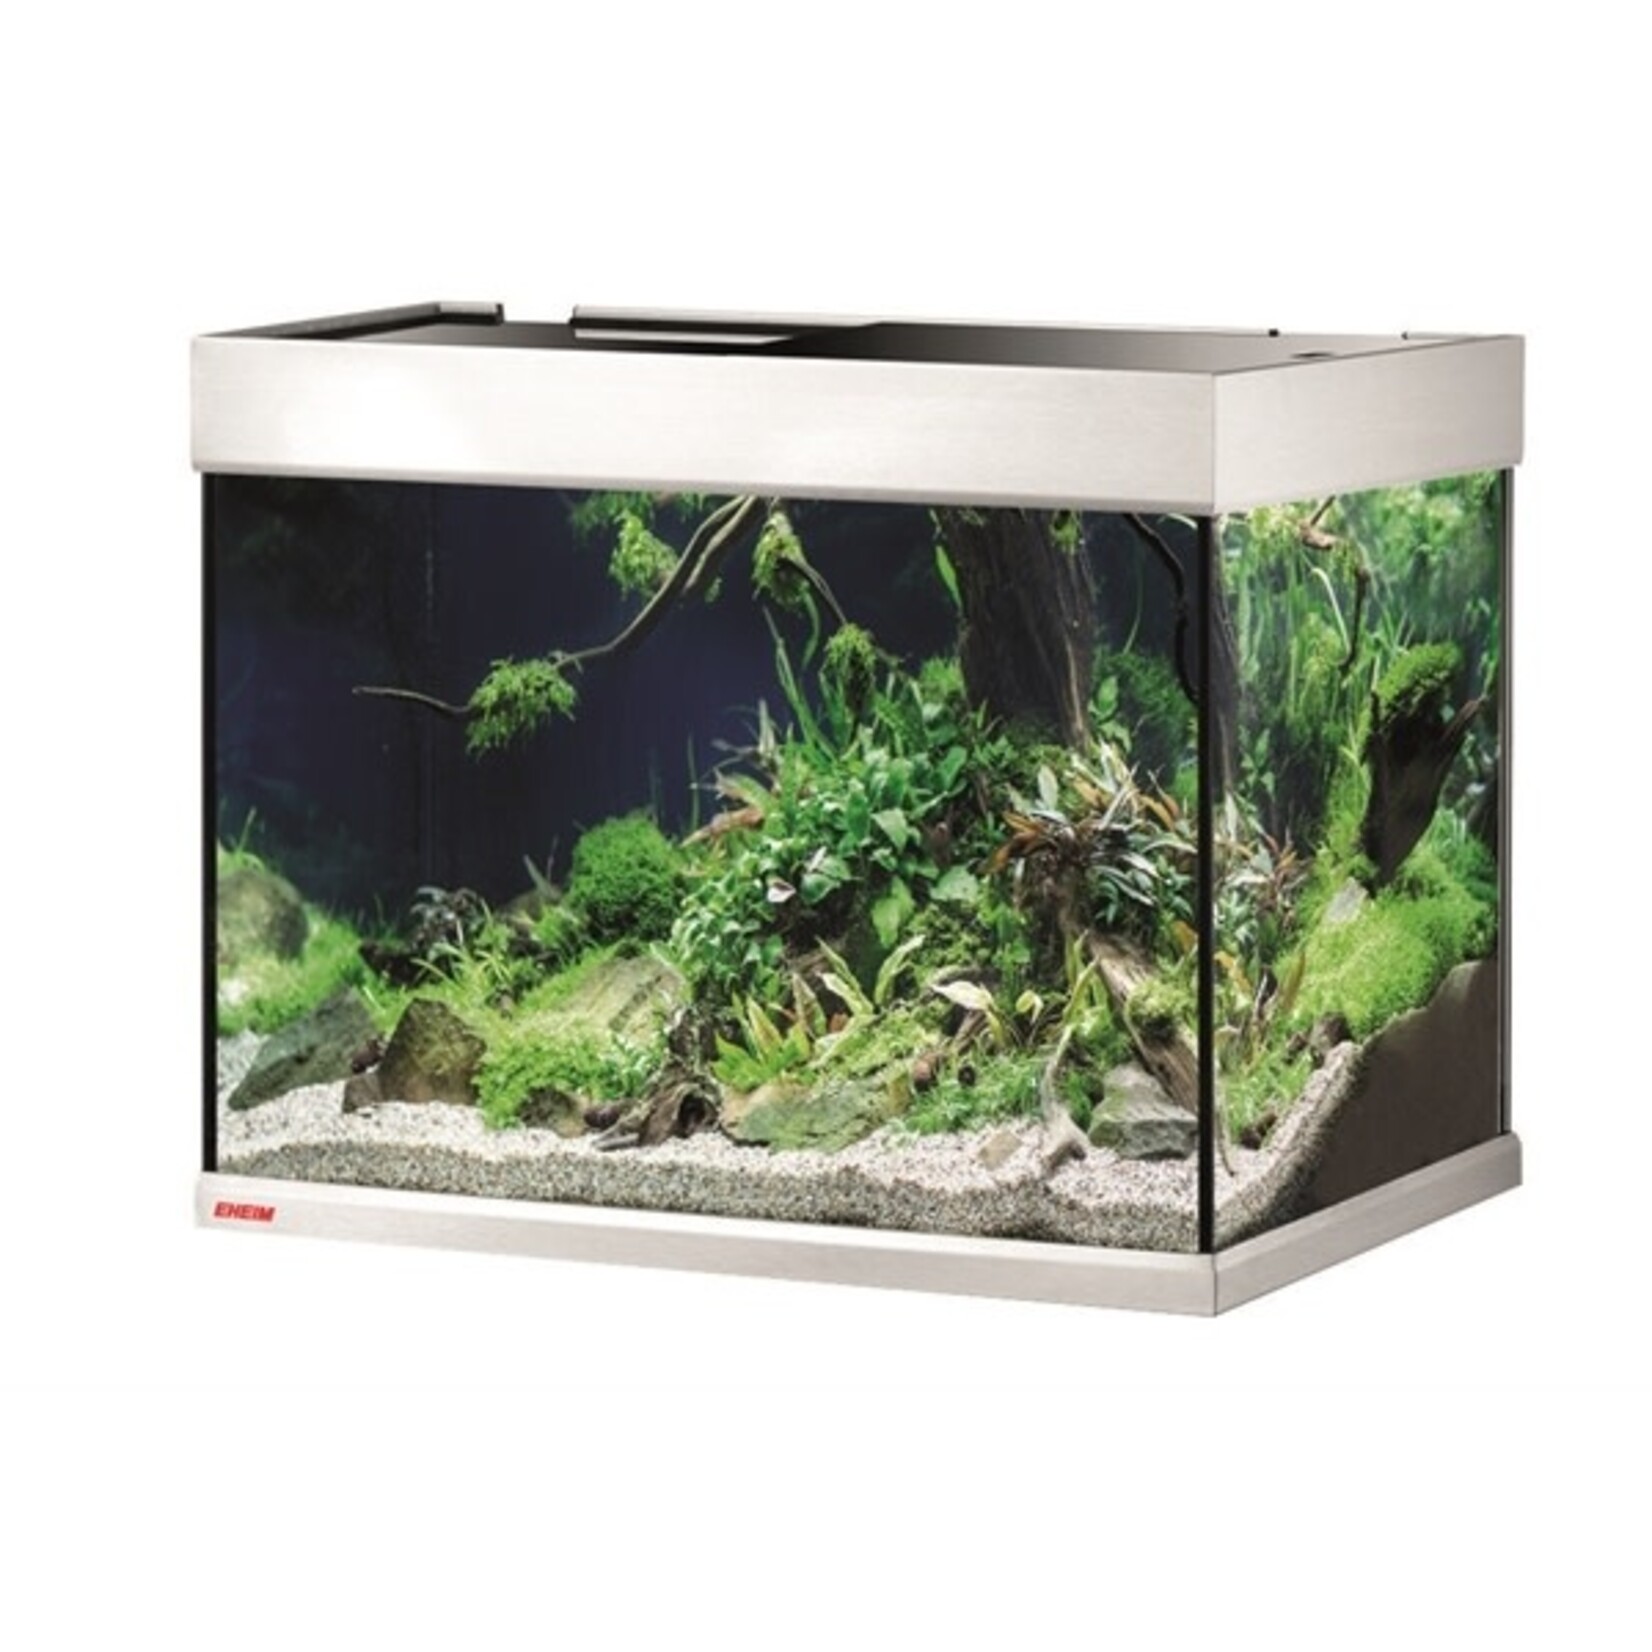 Eheim aquarium proxima 175 classic LED 71x51x57 cm